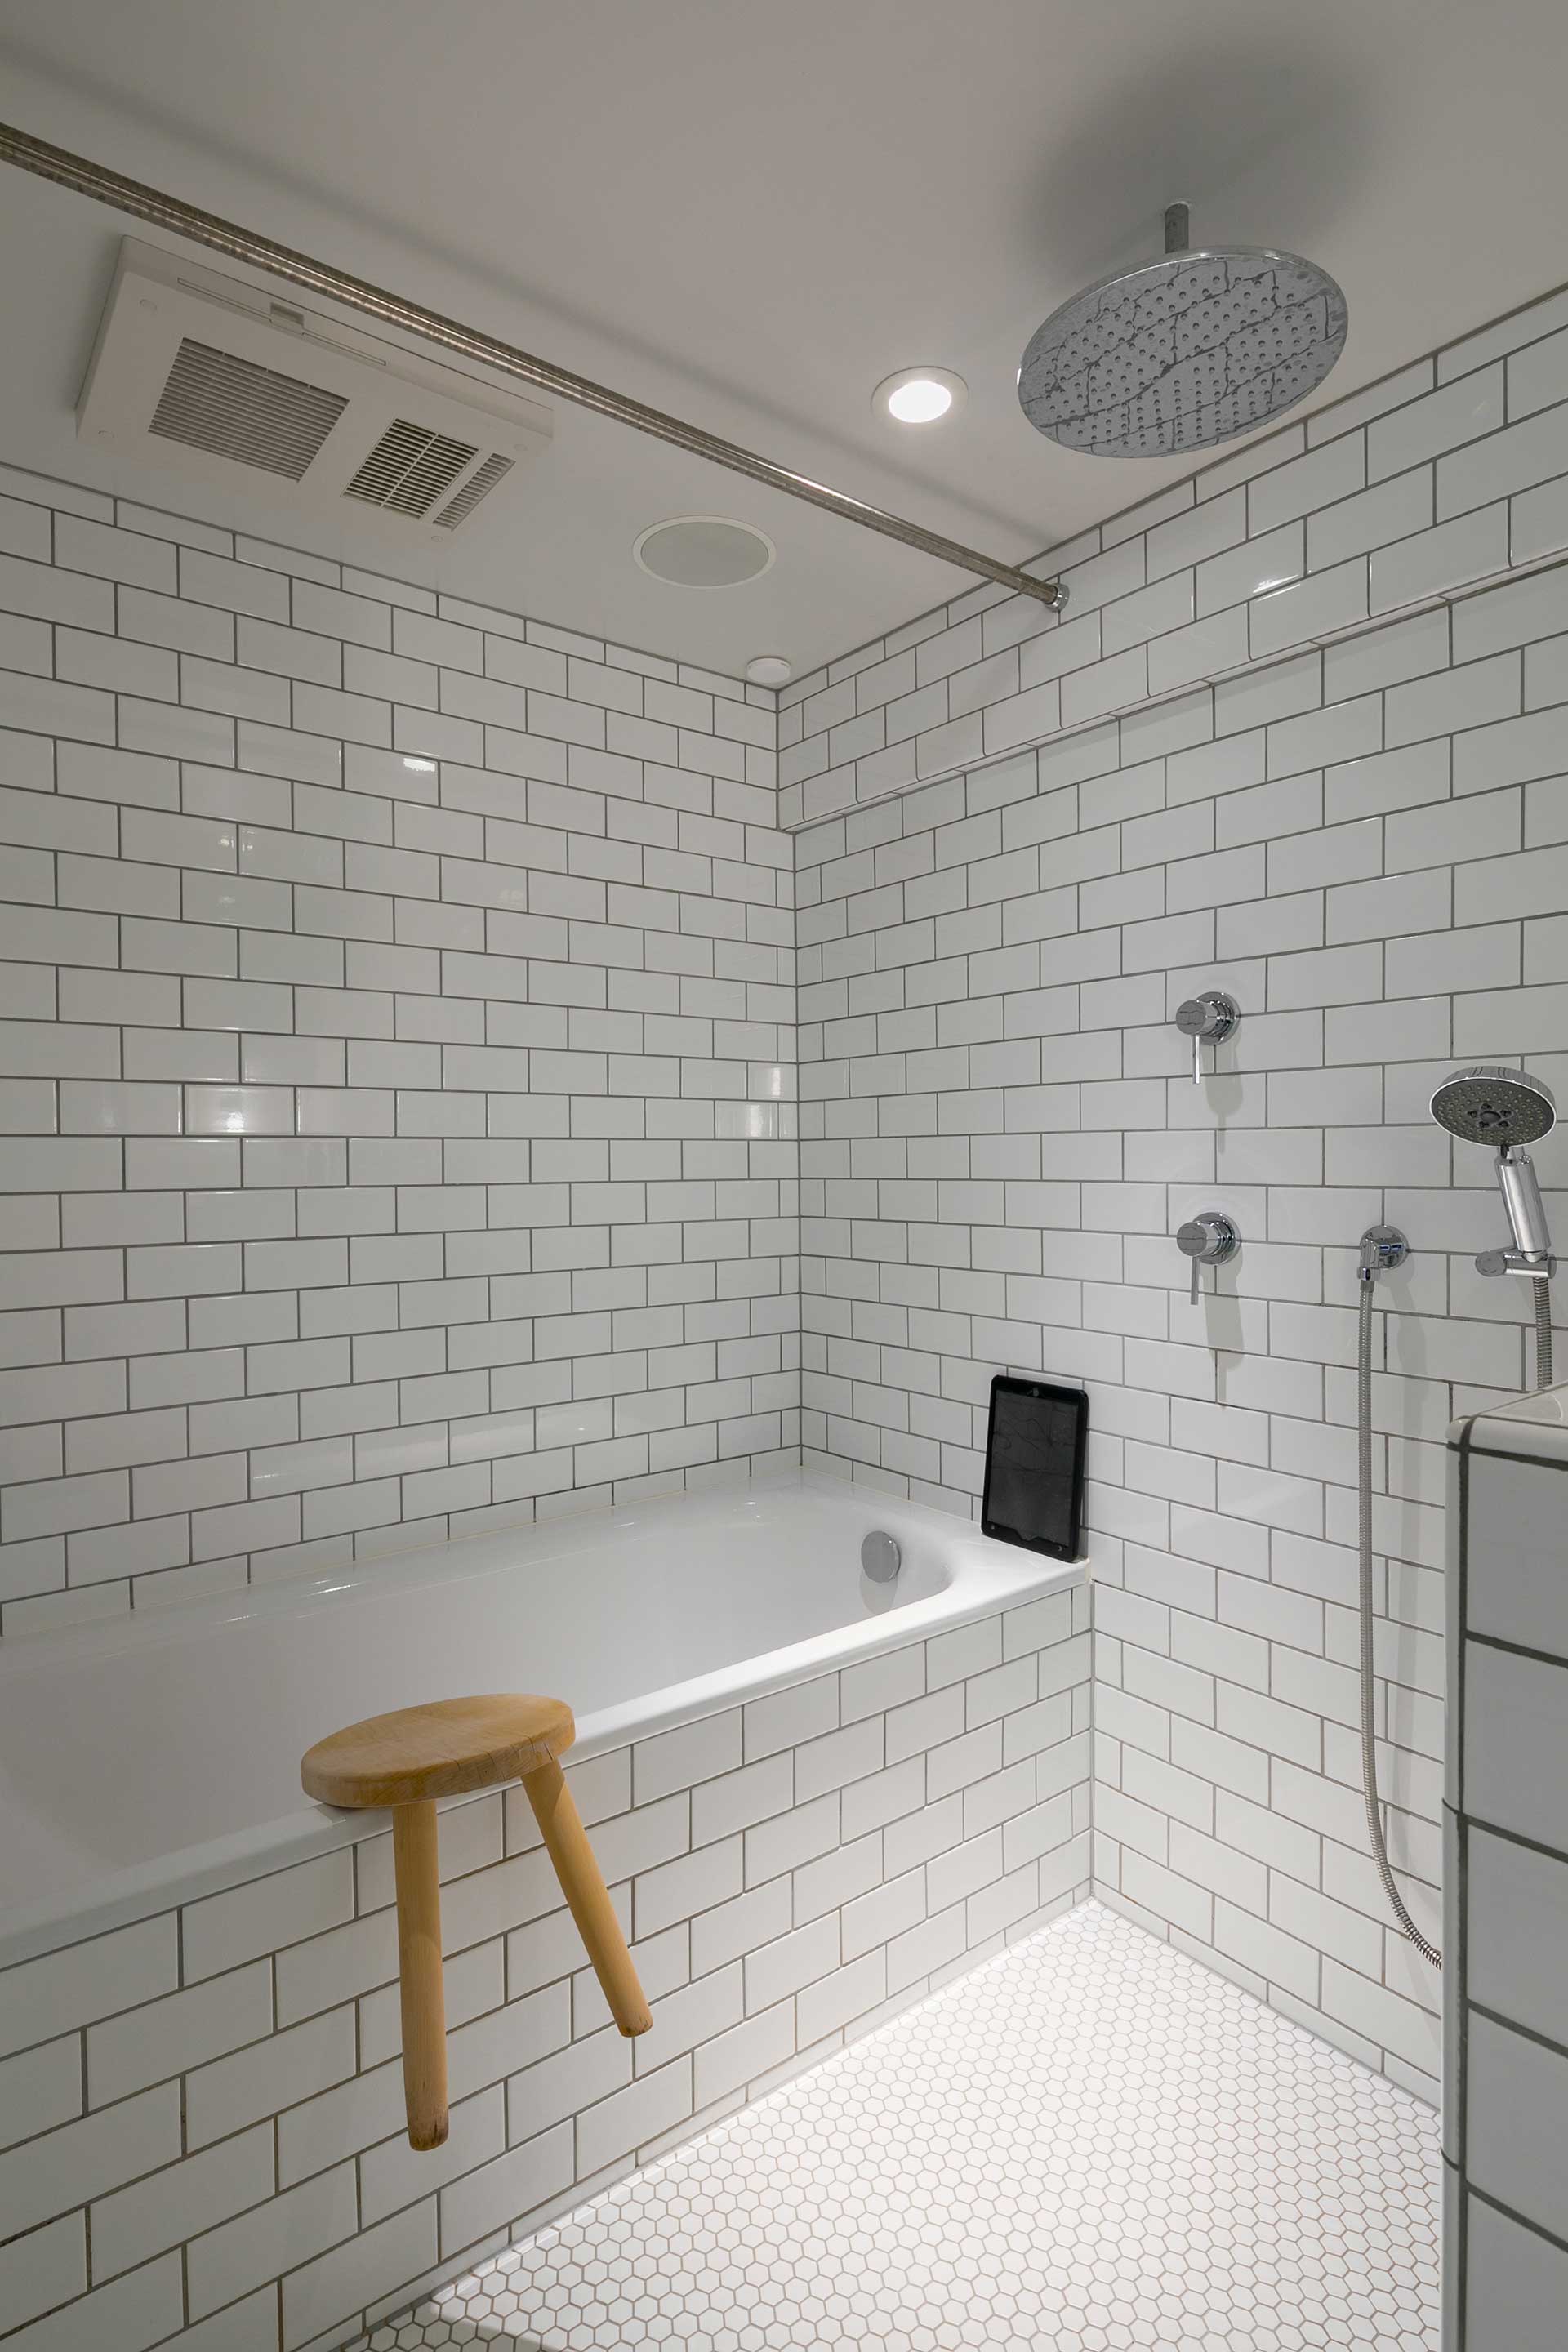 レインシャワーやBluetooth搭載のスピーカーを設置したホテルライクなバスルーム。壁と浴槽はサブウェイタイル、床はモザイクタイルを使用。